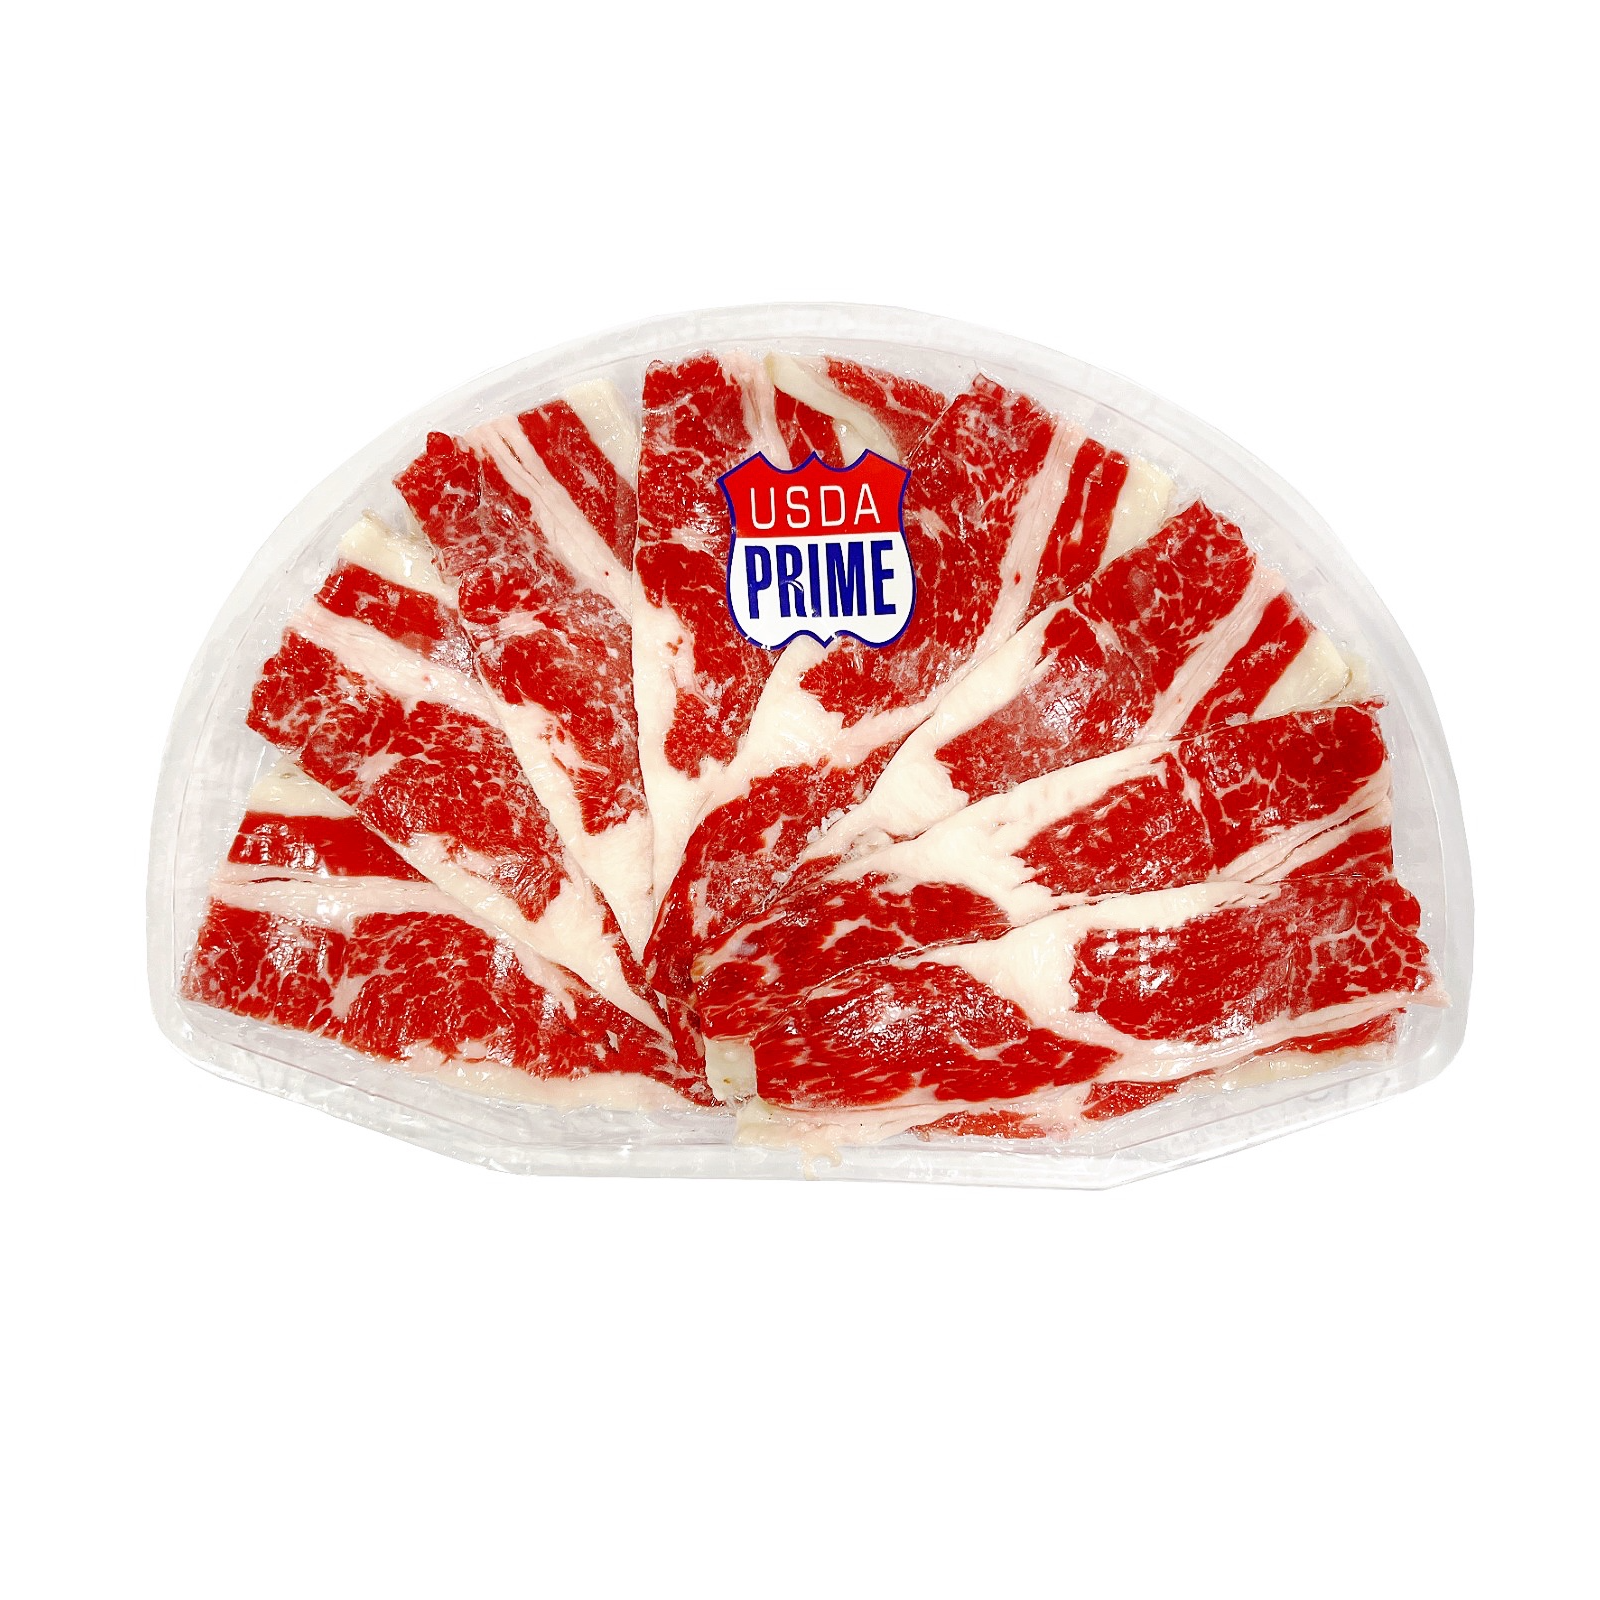 美國頂級PRIME胸腹肥牛火鍋片